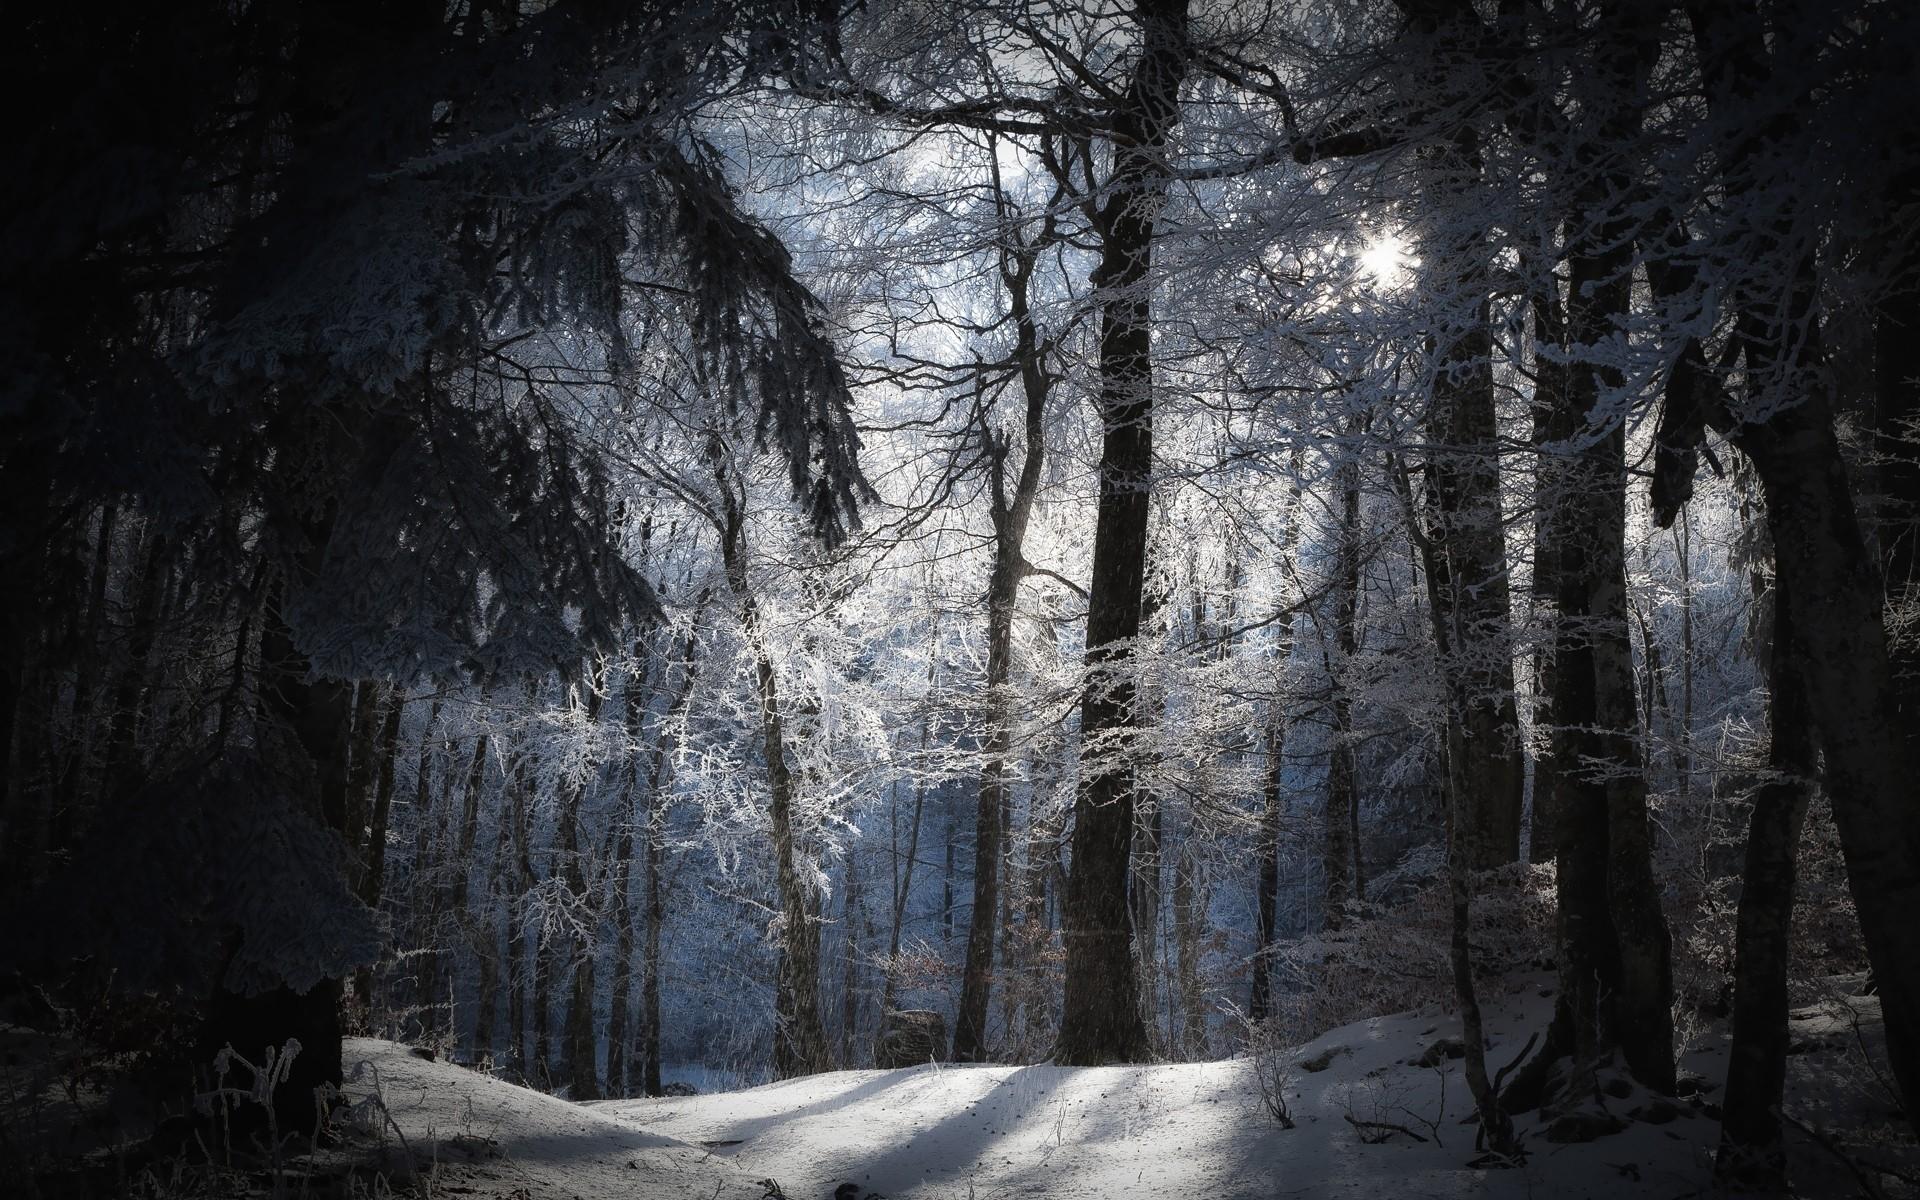 Dark Winter Wallpaper Images - Free Download on Freepik